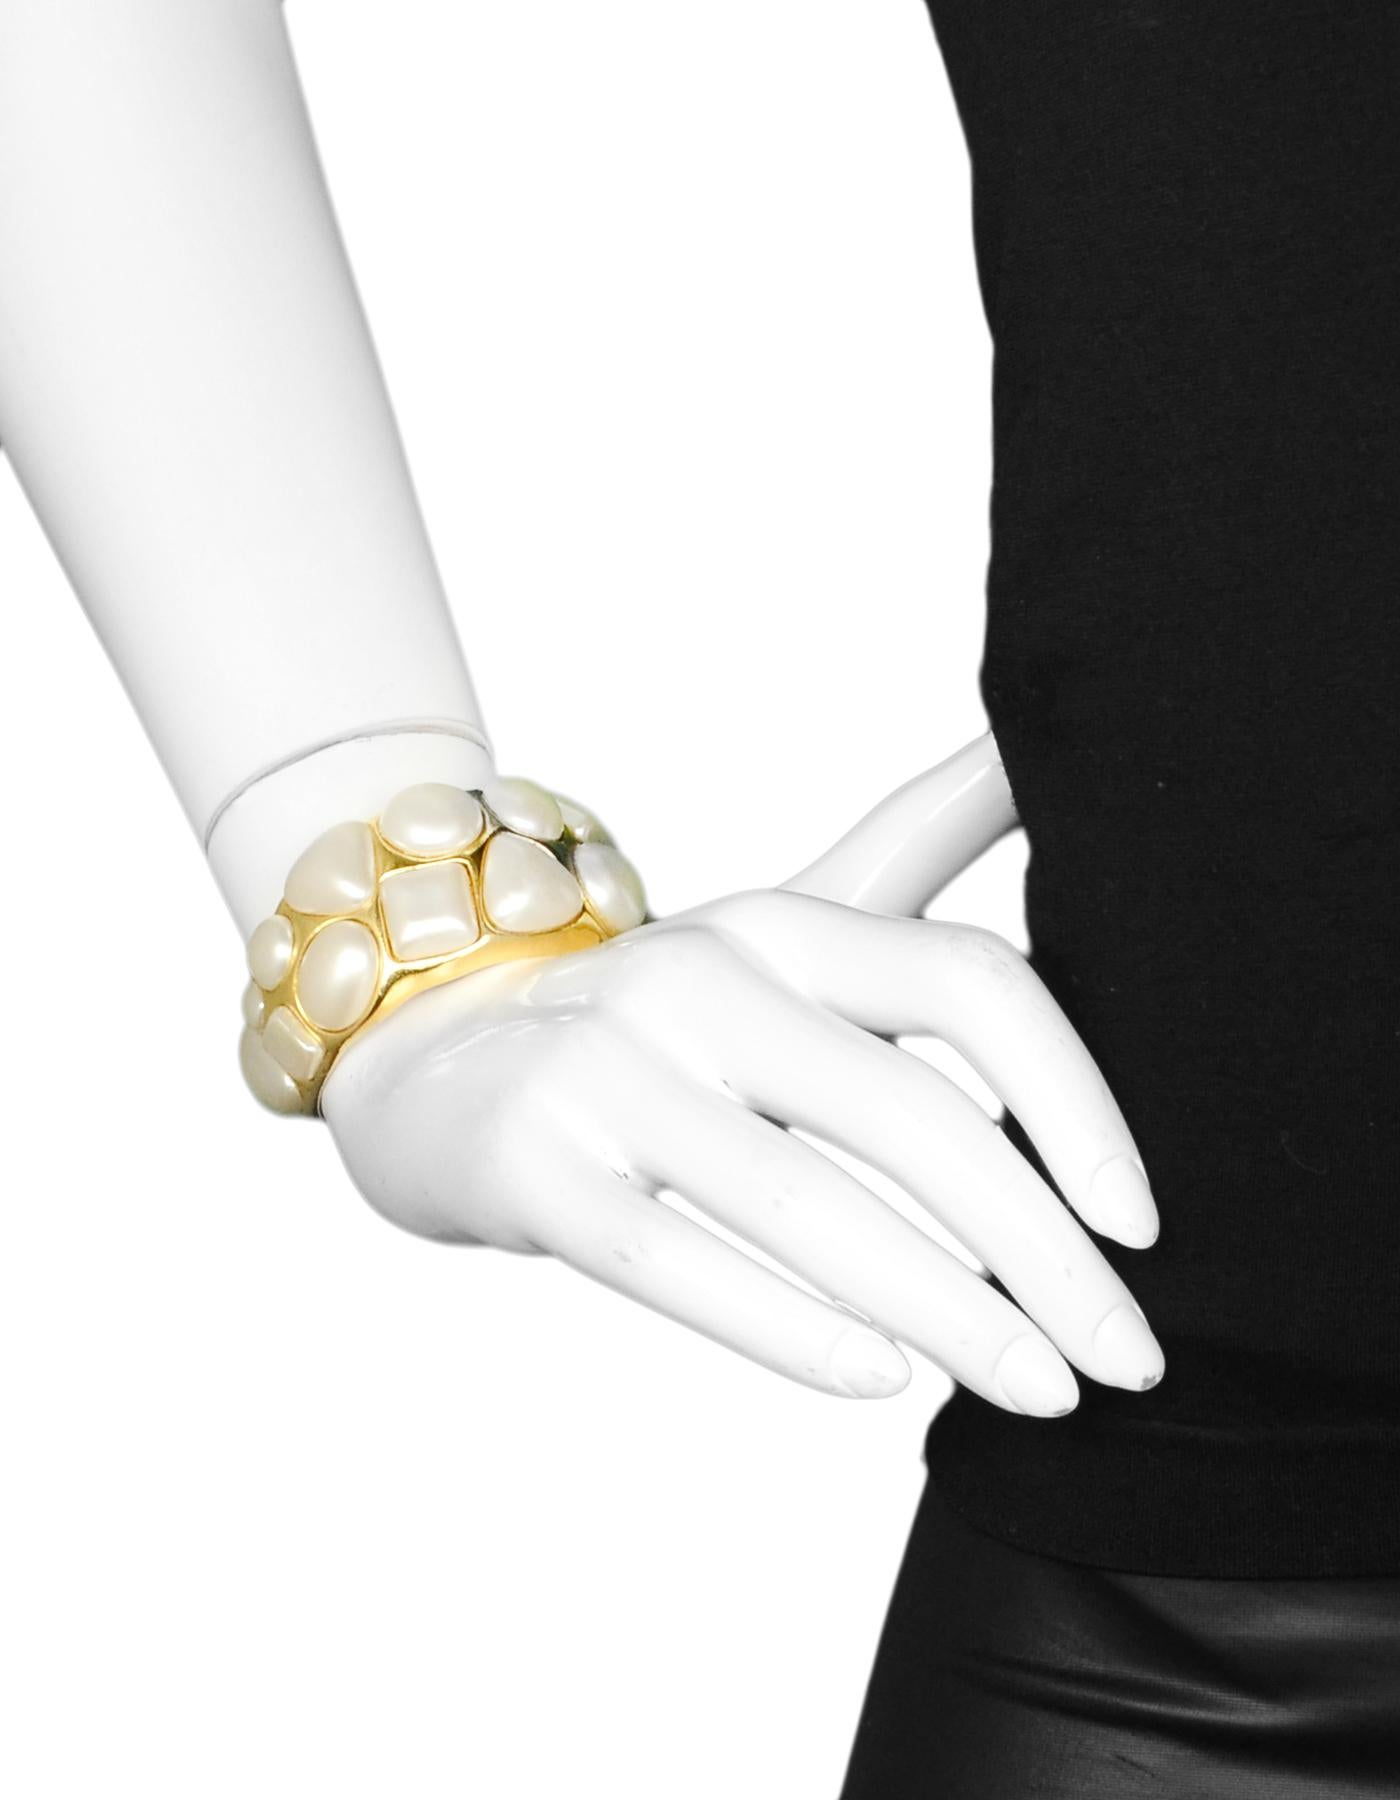 Chanel Vintage '87 Goldtone & Geometrische Faux Pearl Manschettenarmband

Hergestellt in: Frankreich
Jahr der Herstellung: 1987
Stempel: 2 CC 6
Verschluss: Keine
Farbe: Goldtone und Elfenbein
Materialien: Metall und Kunstperle
Allgemeiner Zustand: